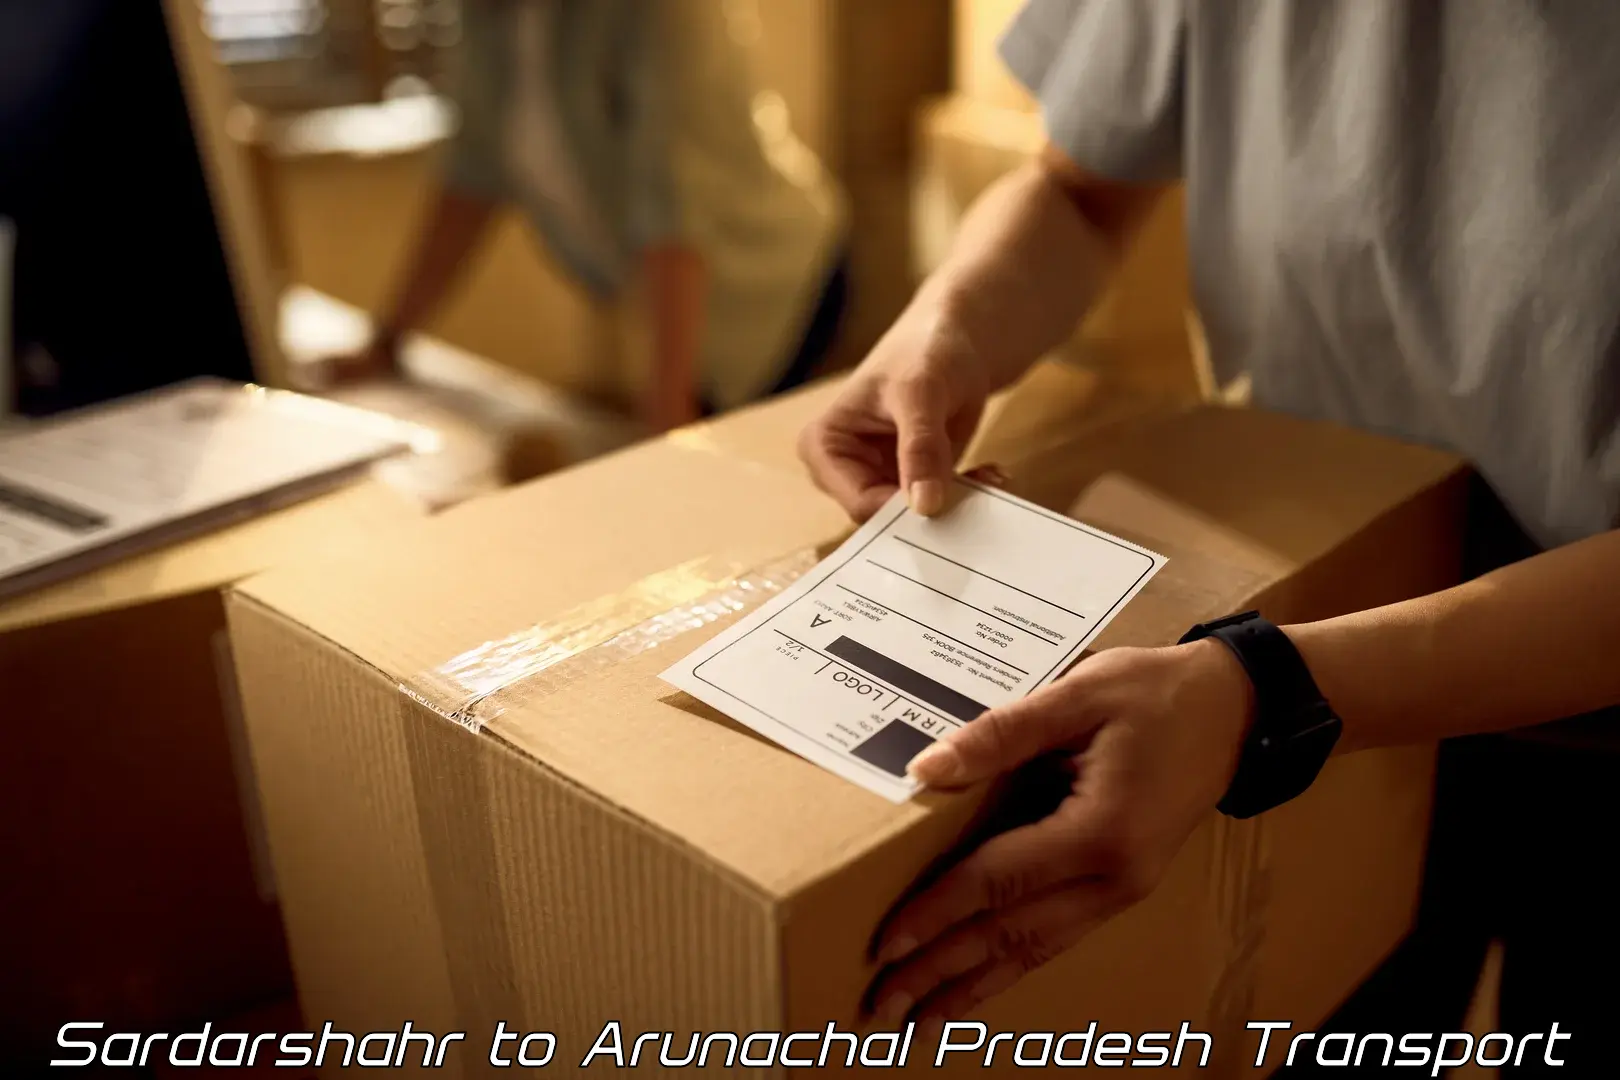 India truck logistics services Sardarshahr to Arunachal Pradesh